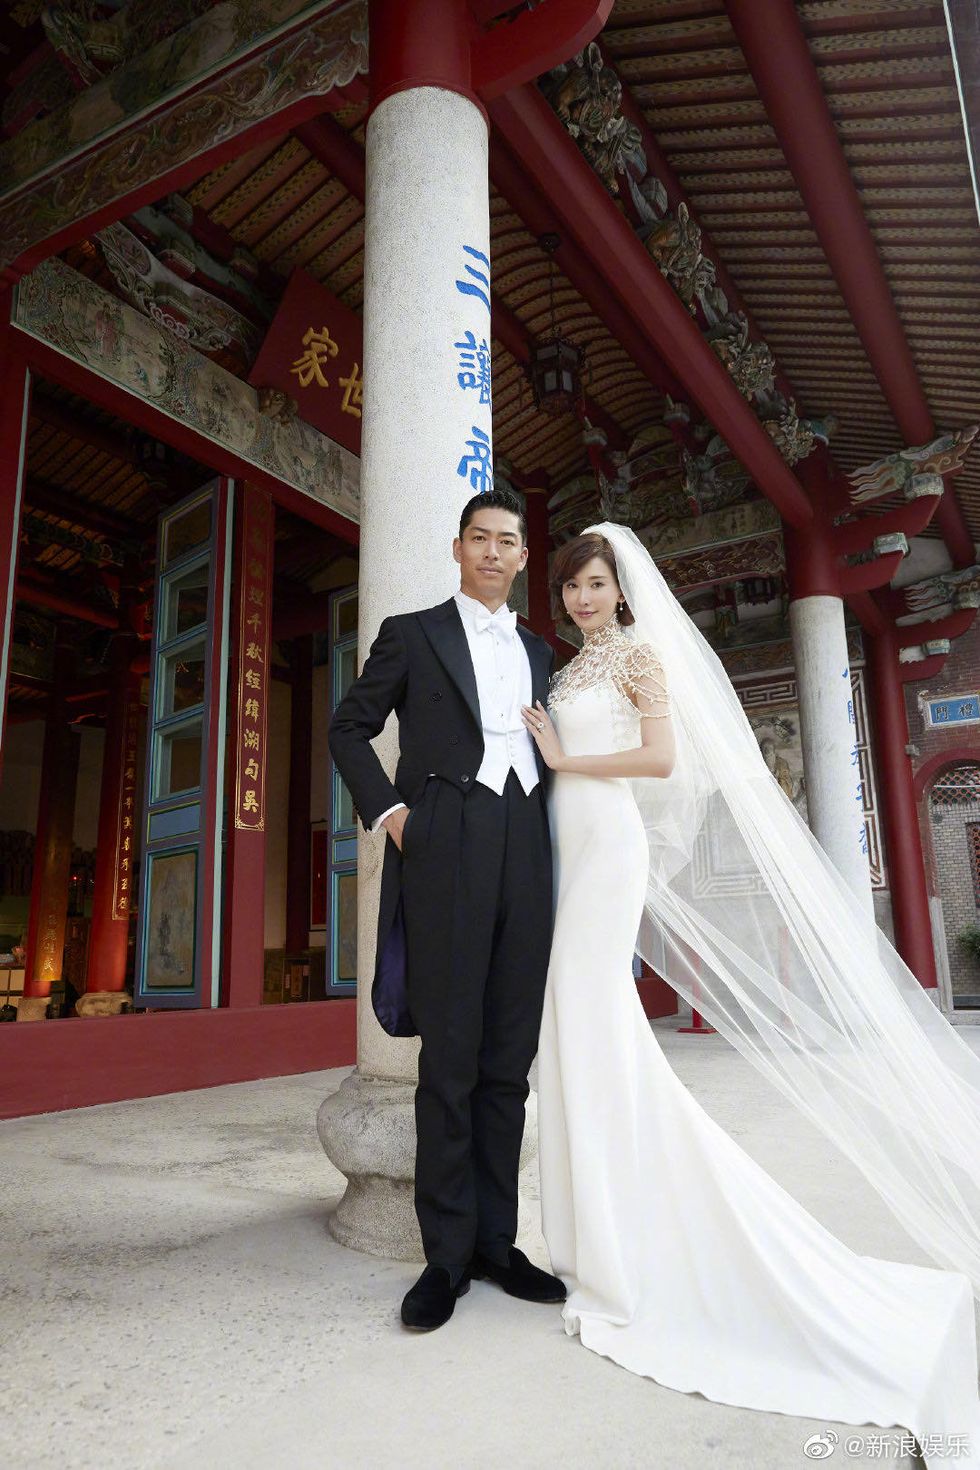 林志玲 放浪兄弟的Akira 台南婚禮婚紗照